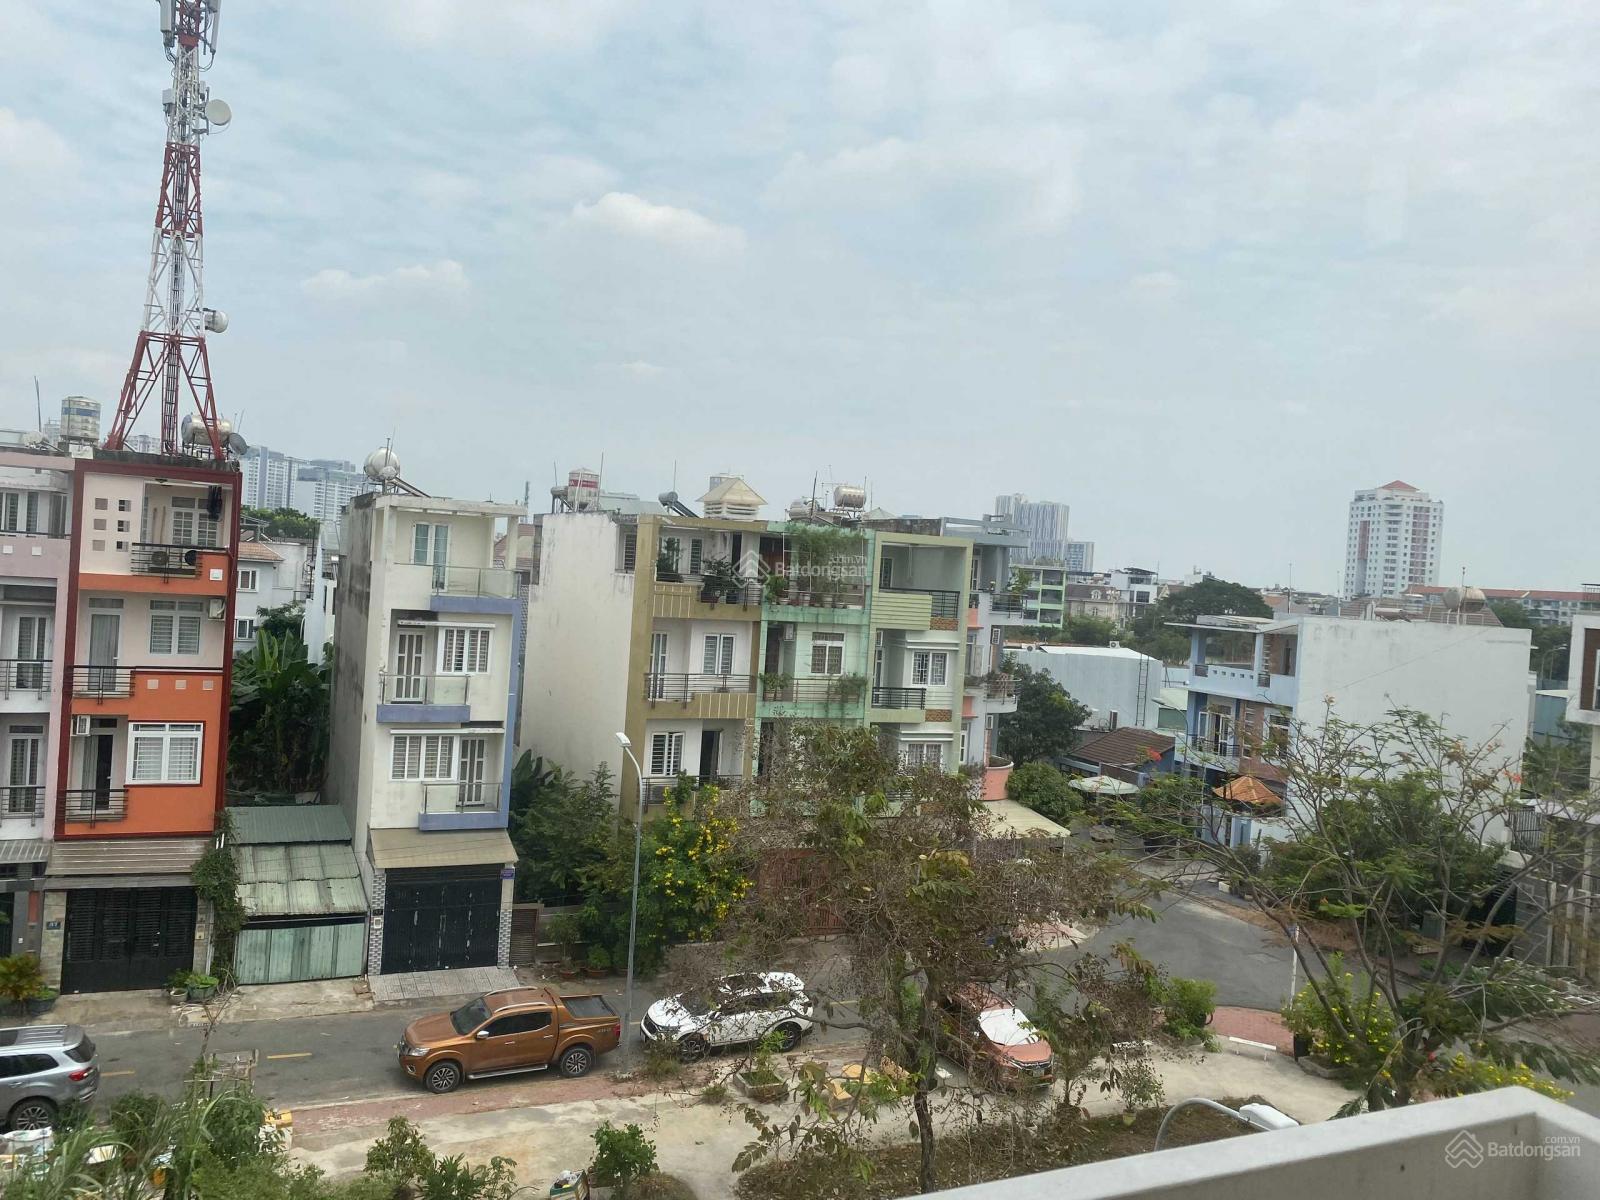 Bán nhà khu đô thị An Phú An Khánh, Quận 2. 4x20m, 5x20m, 8x20m, hầm, 4 lầu, sổ hồng, giá từ 15 tỷ